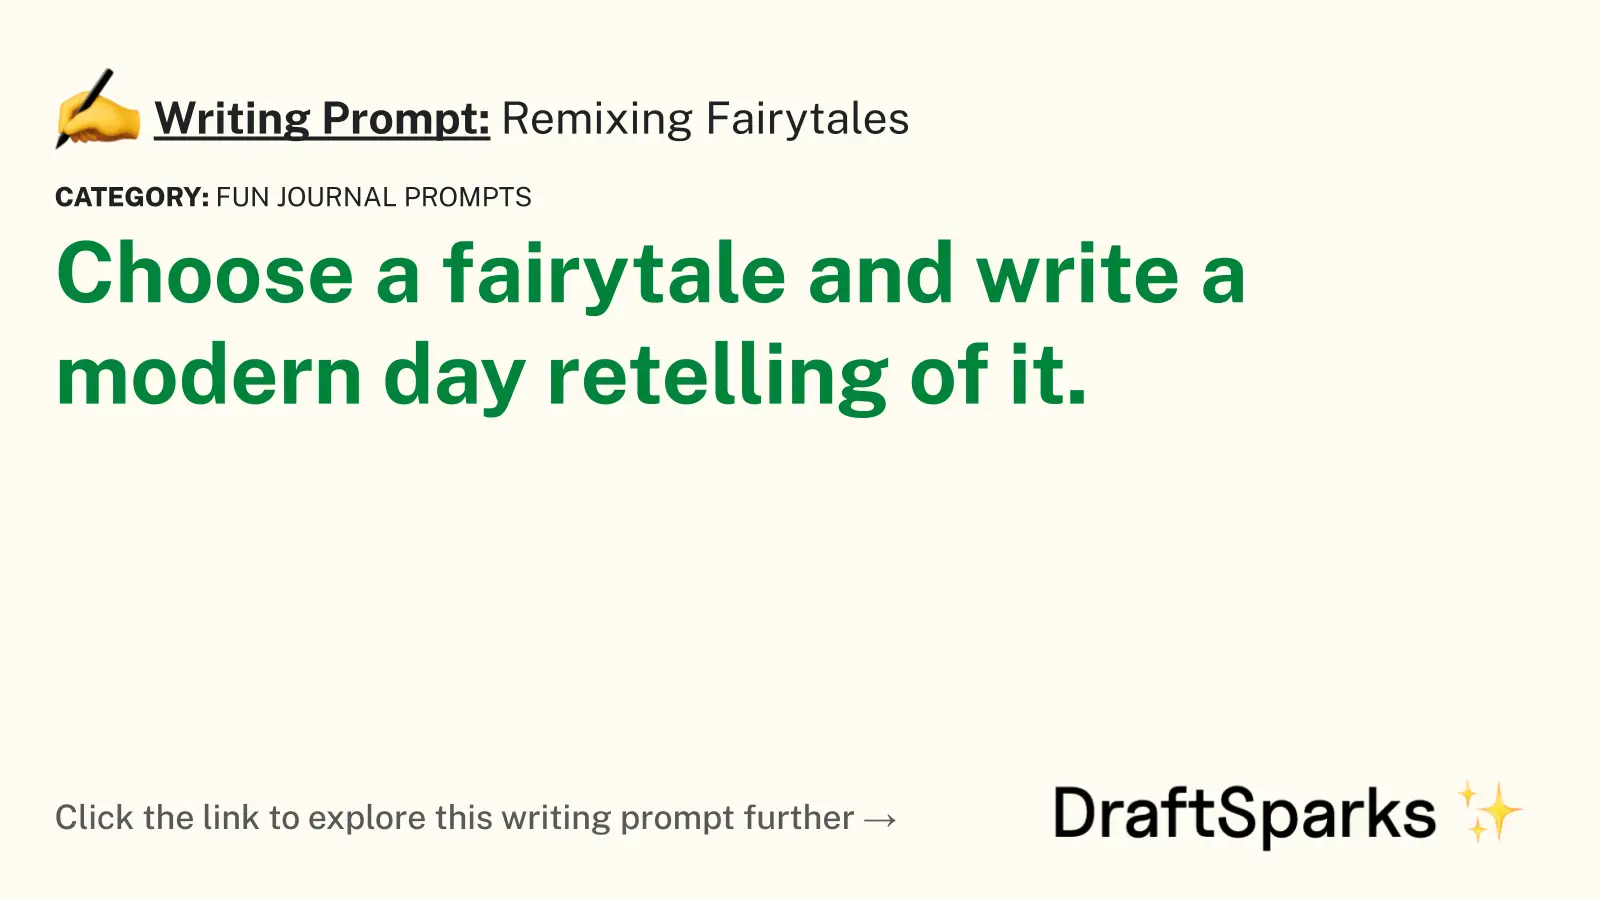 Remixing Fairytales